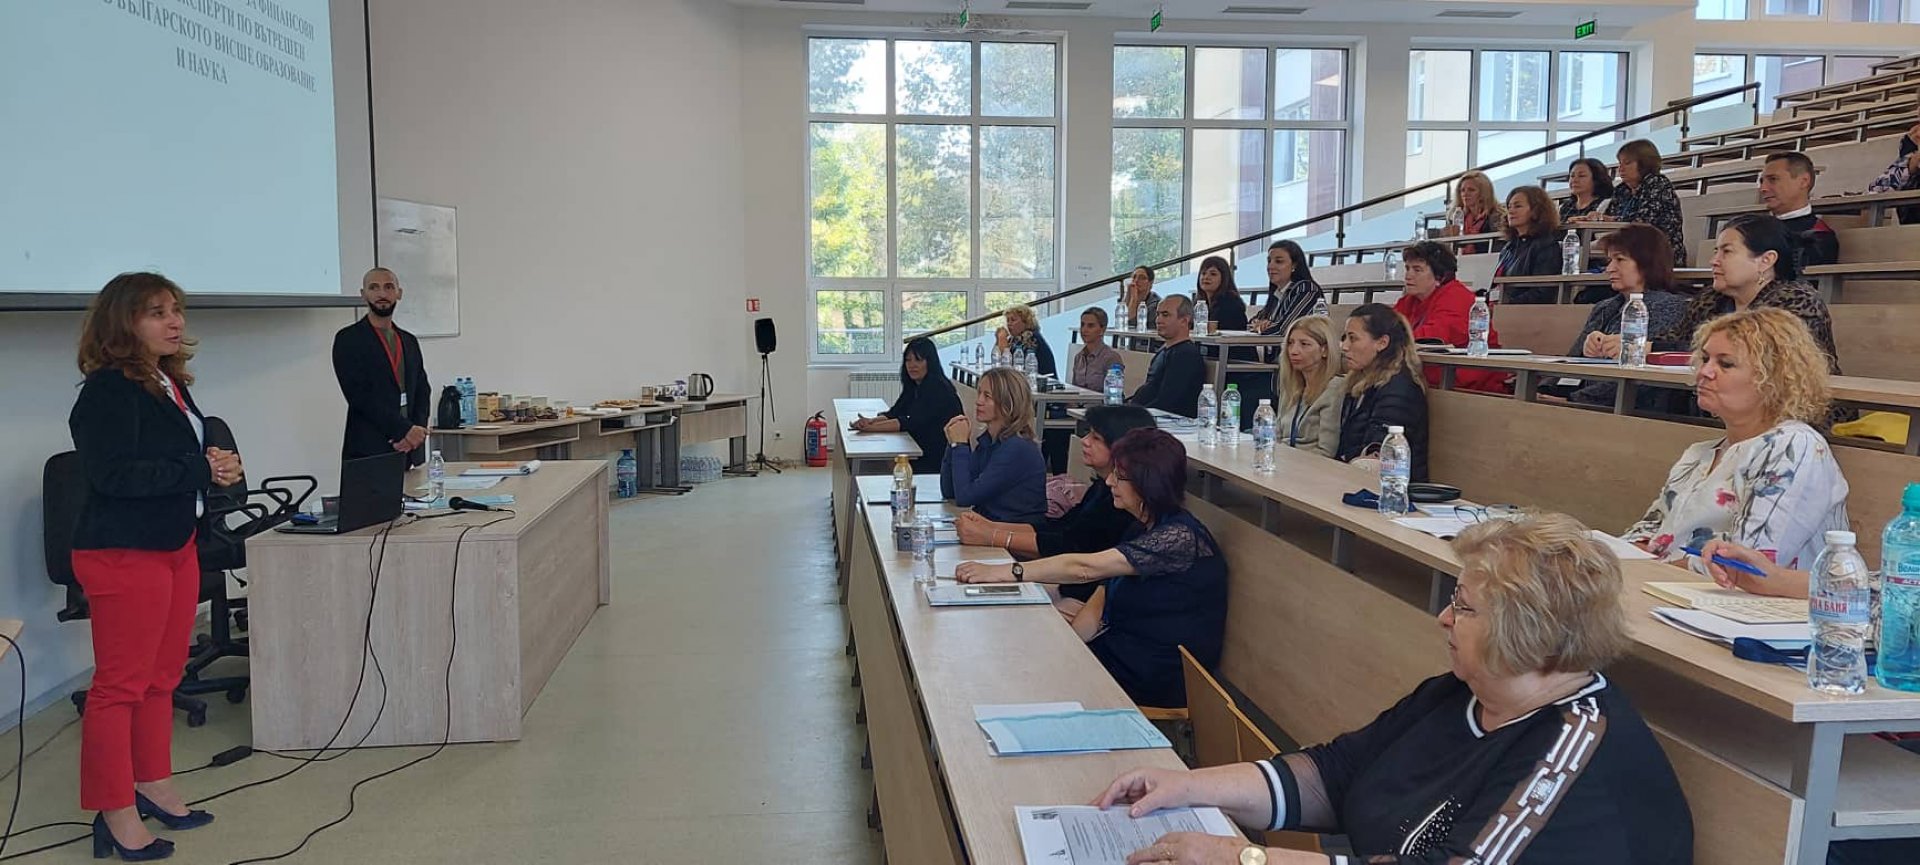 Форумът започна в бургаския университет, който е и организатор на събитието. Снимки университет Проф. д-р Асен Златаров